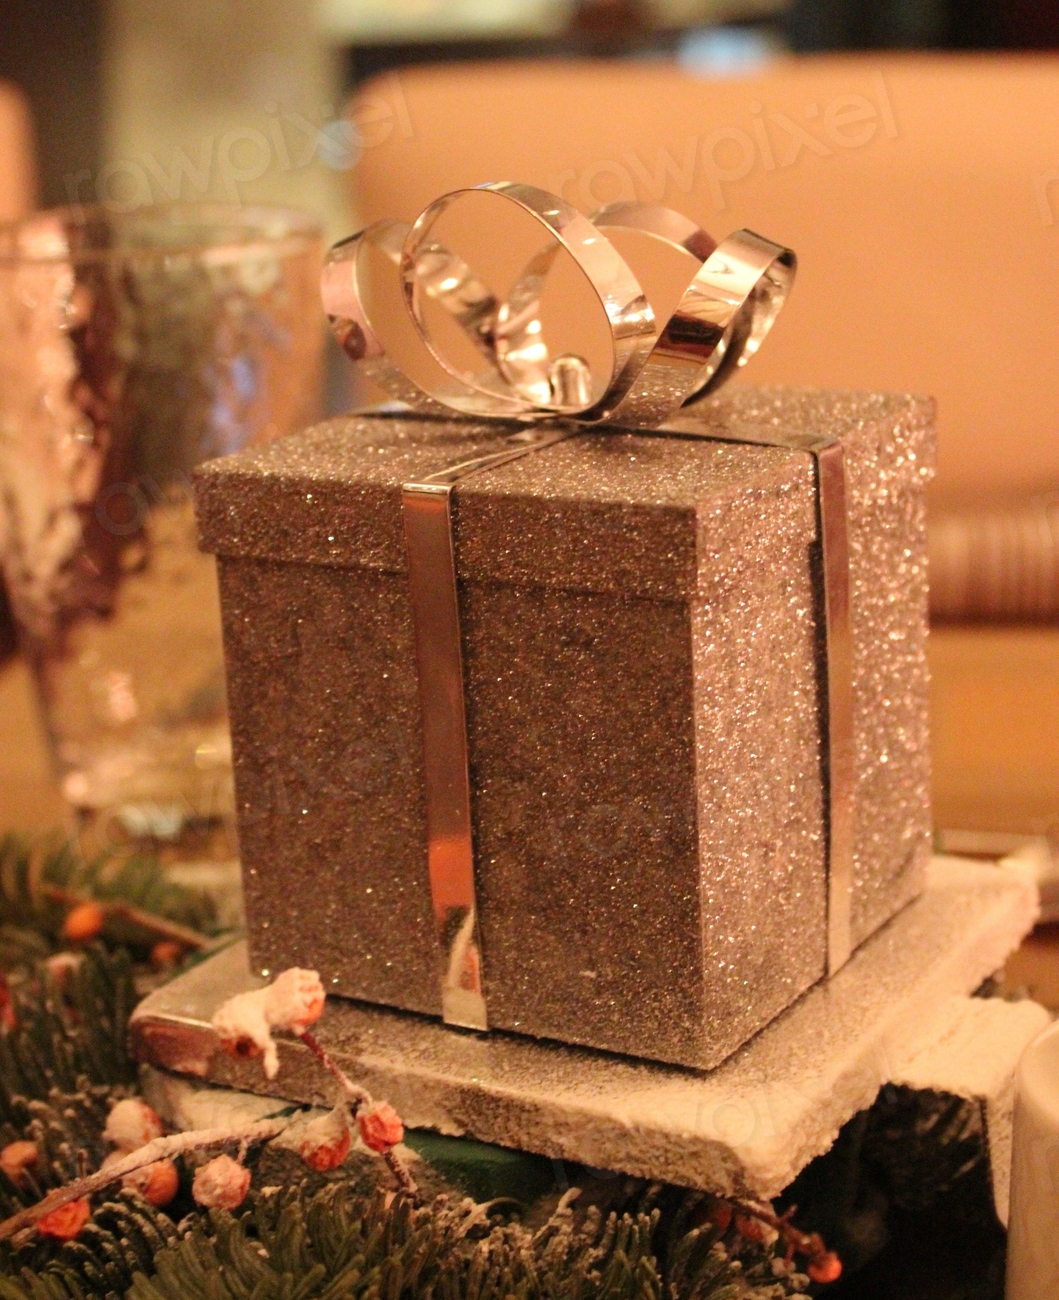 Closeup on Christmas gift box